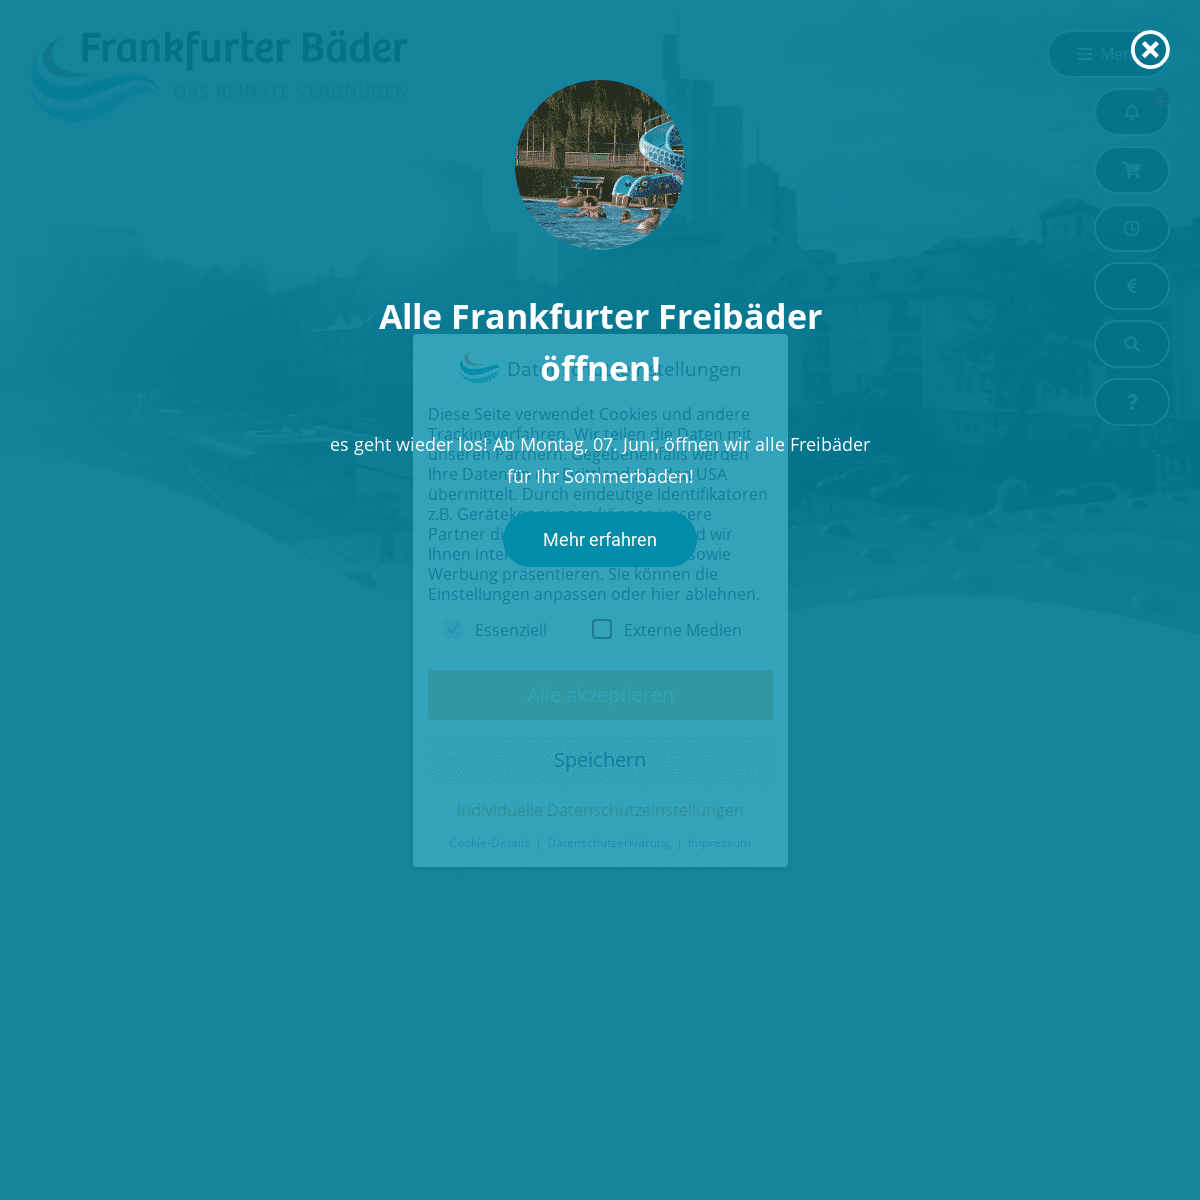 A complete backup of https://frankfurter-baeder.de